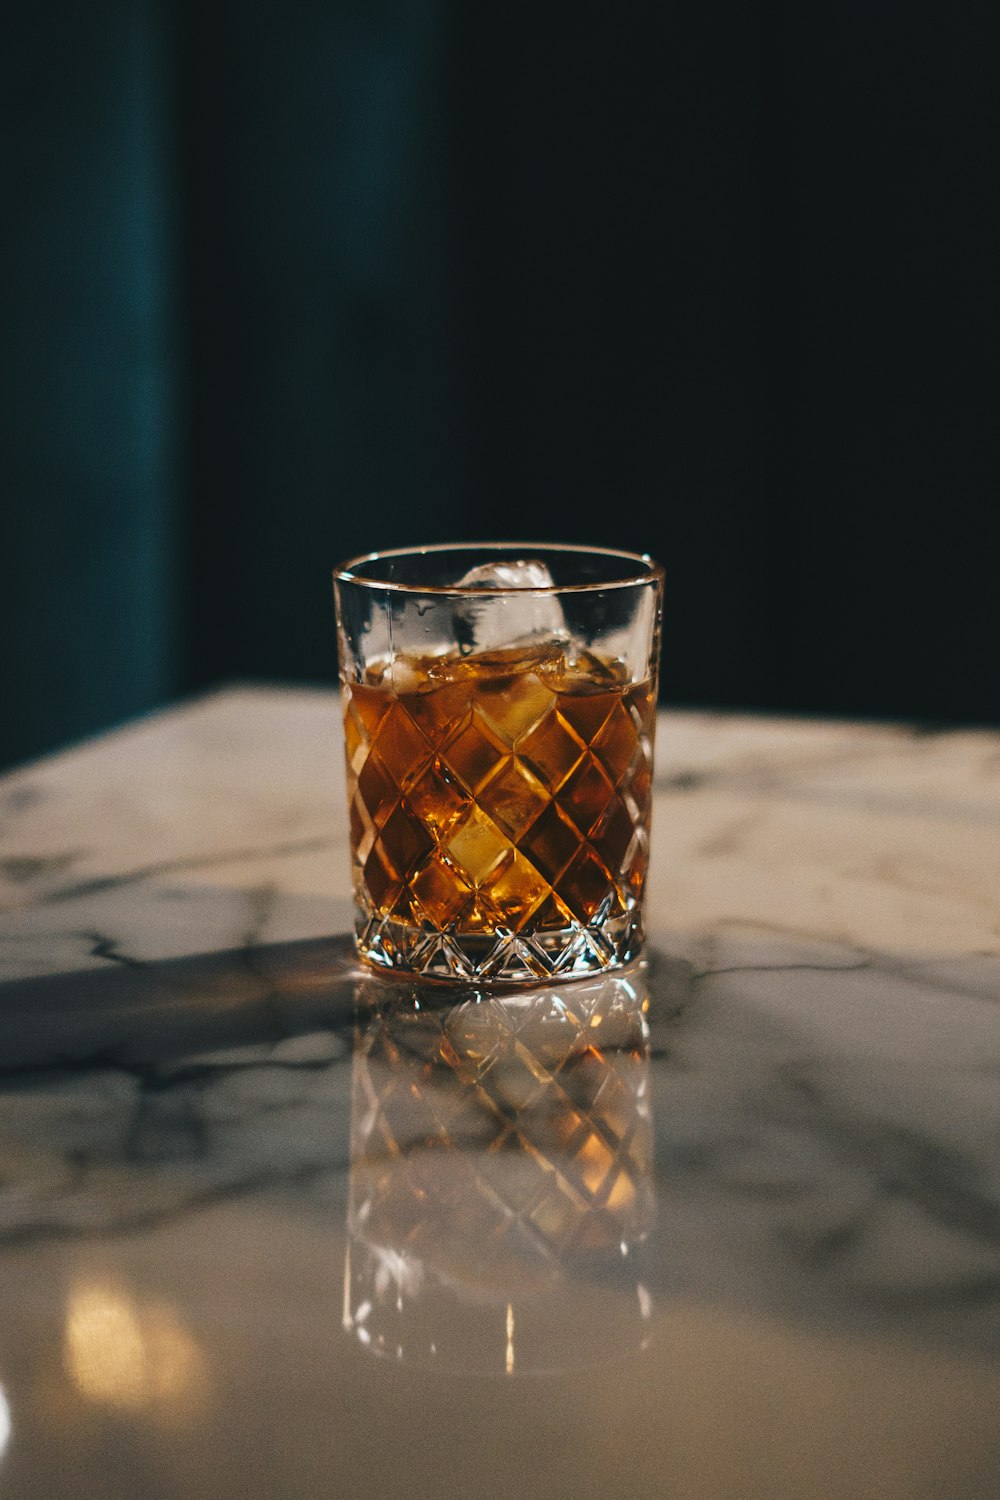 Un vaso de whisky sentado encima de una mesa